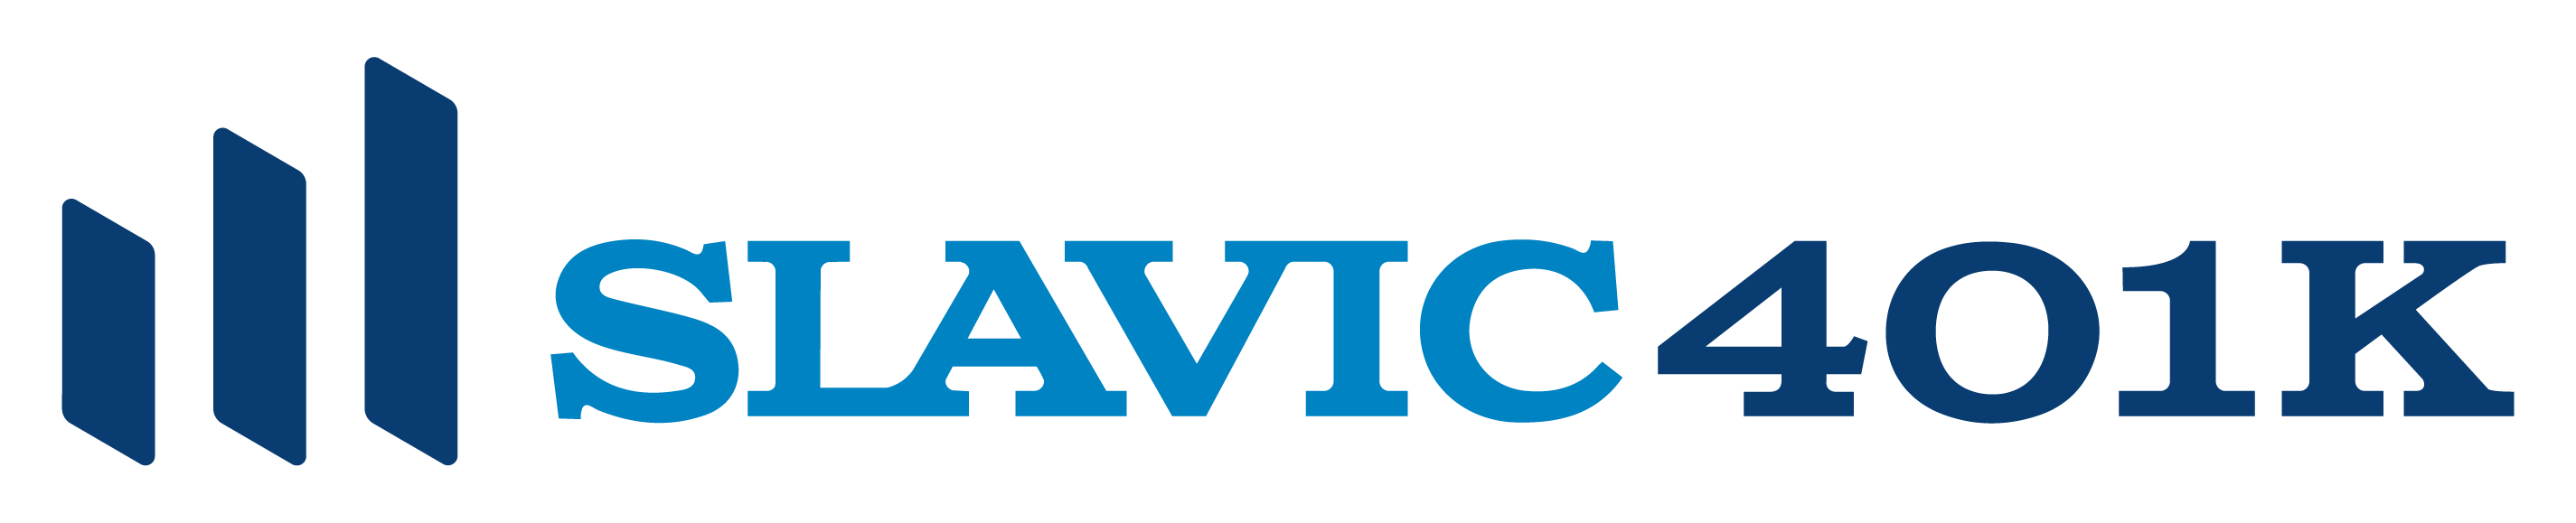 Slavic401k Logo